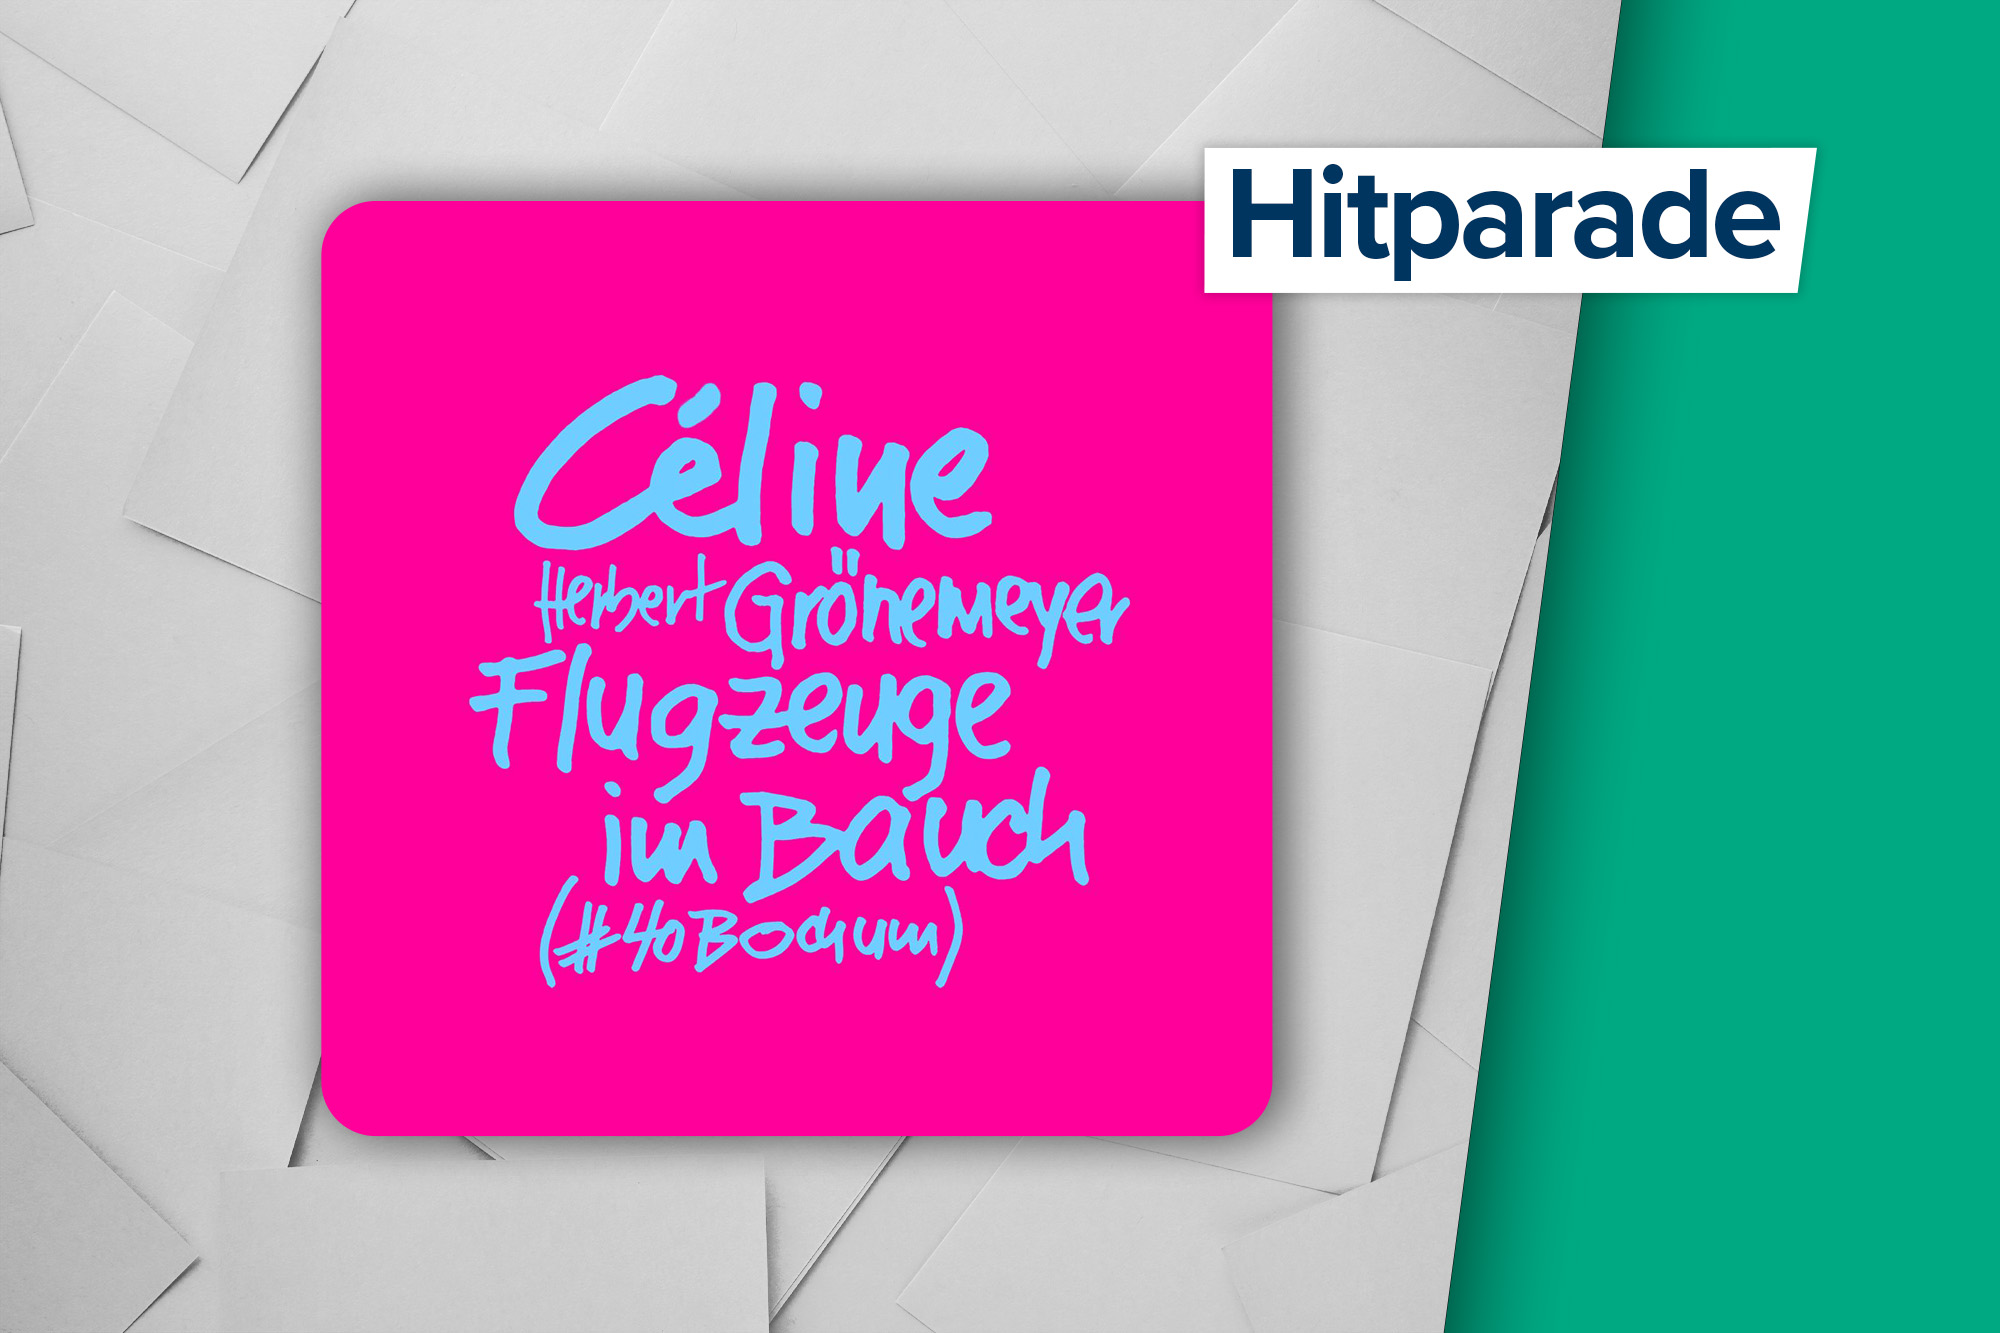 Höchster Neueinstieg in der Hitparade: "Flugzeuge im Bauch" von Celine feat. Herbert Grönemeyer